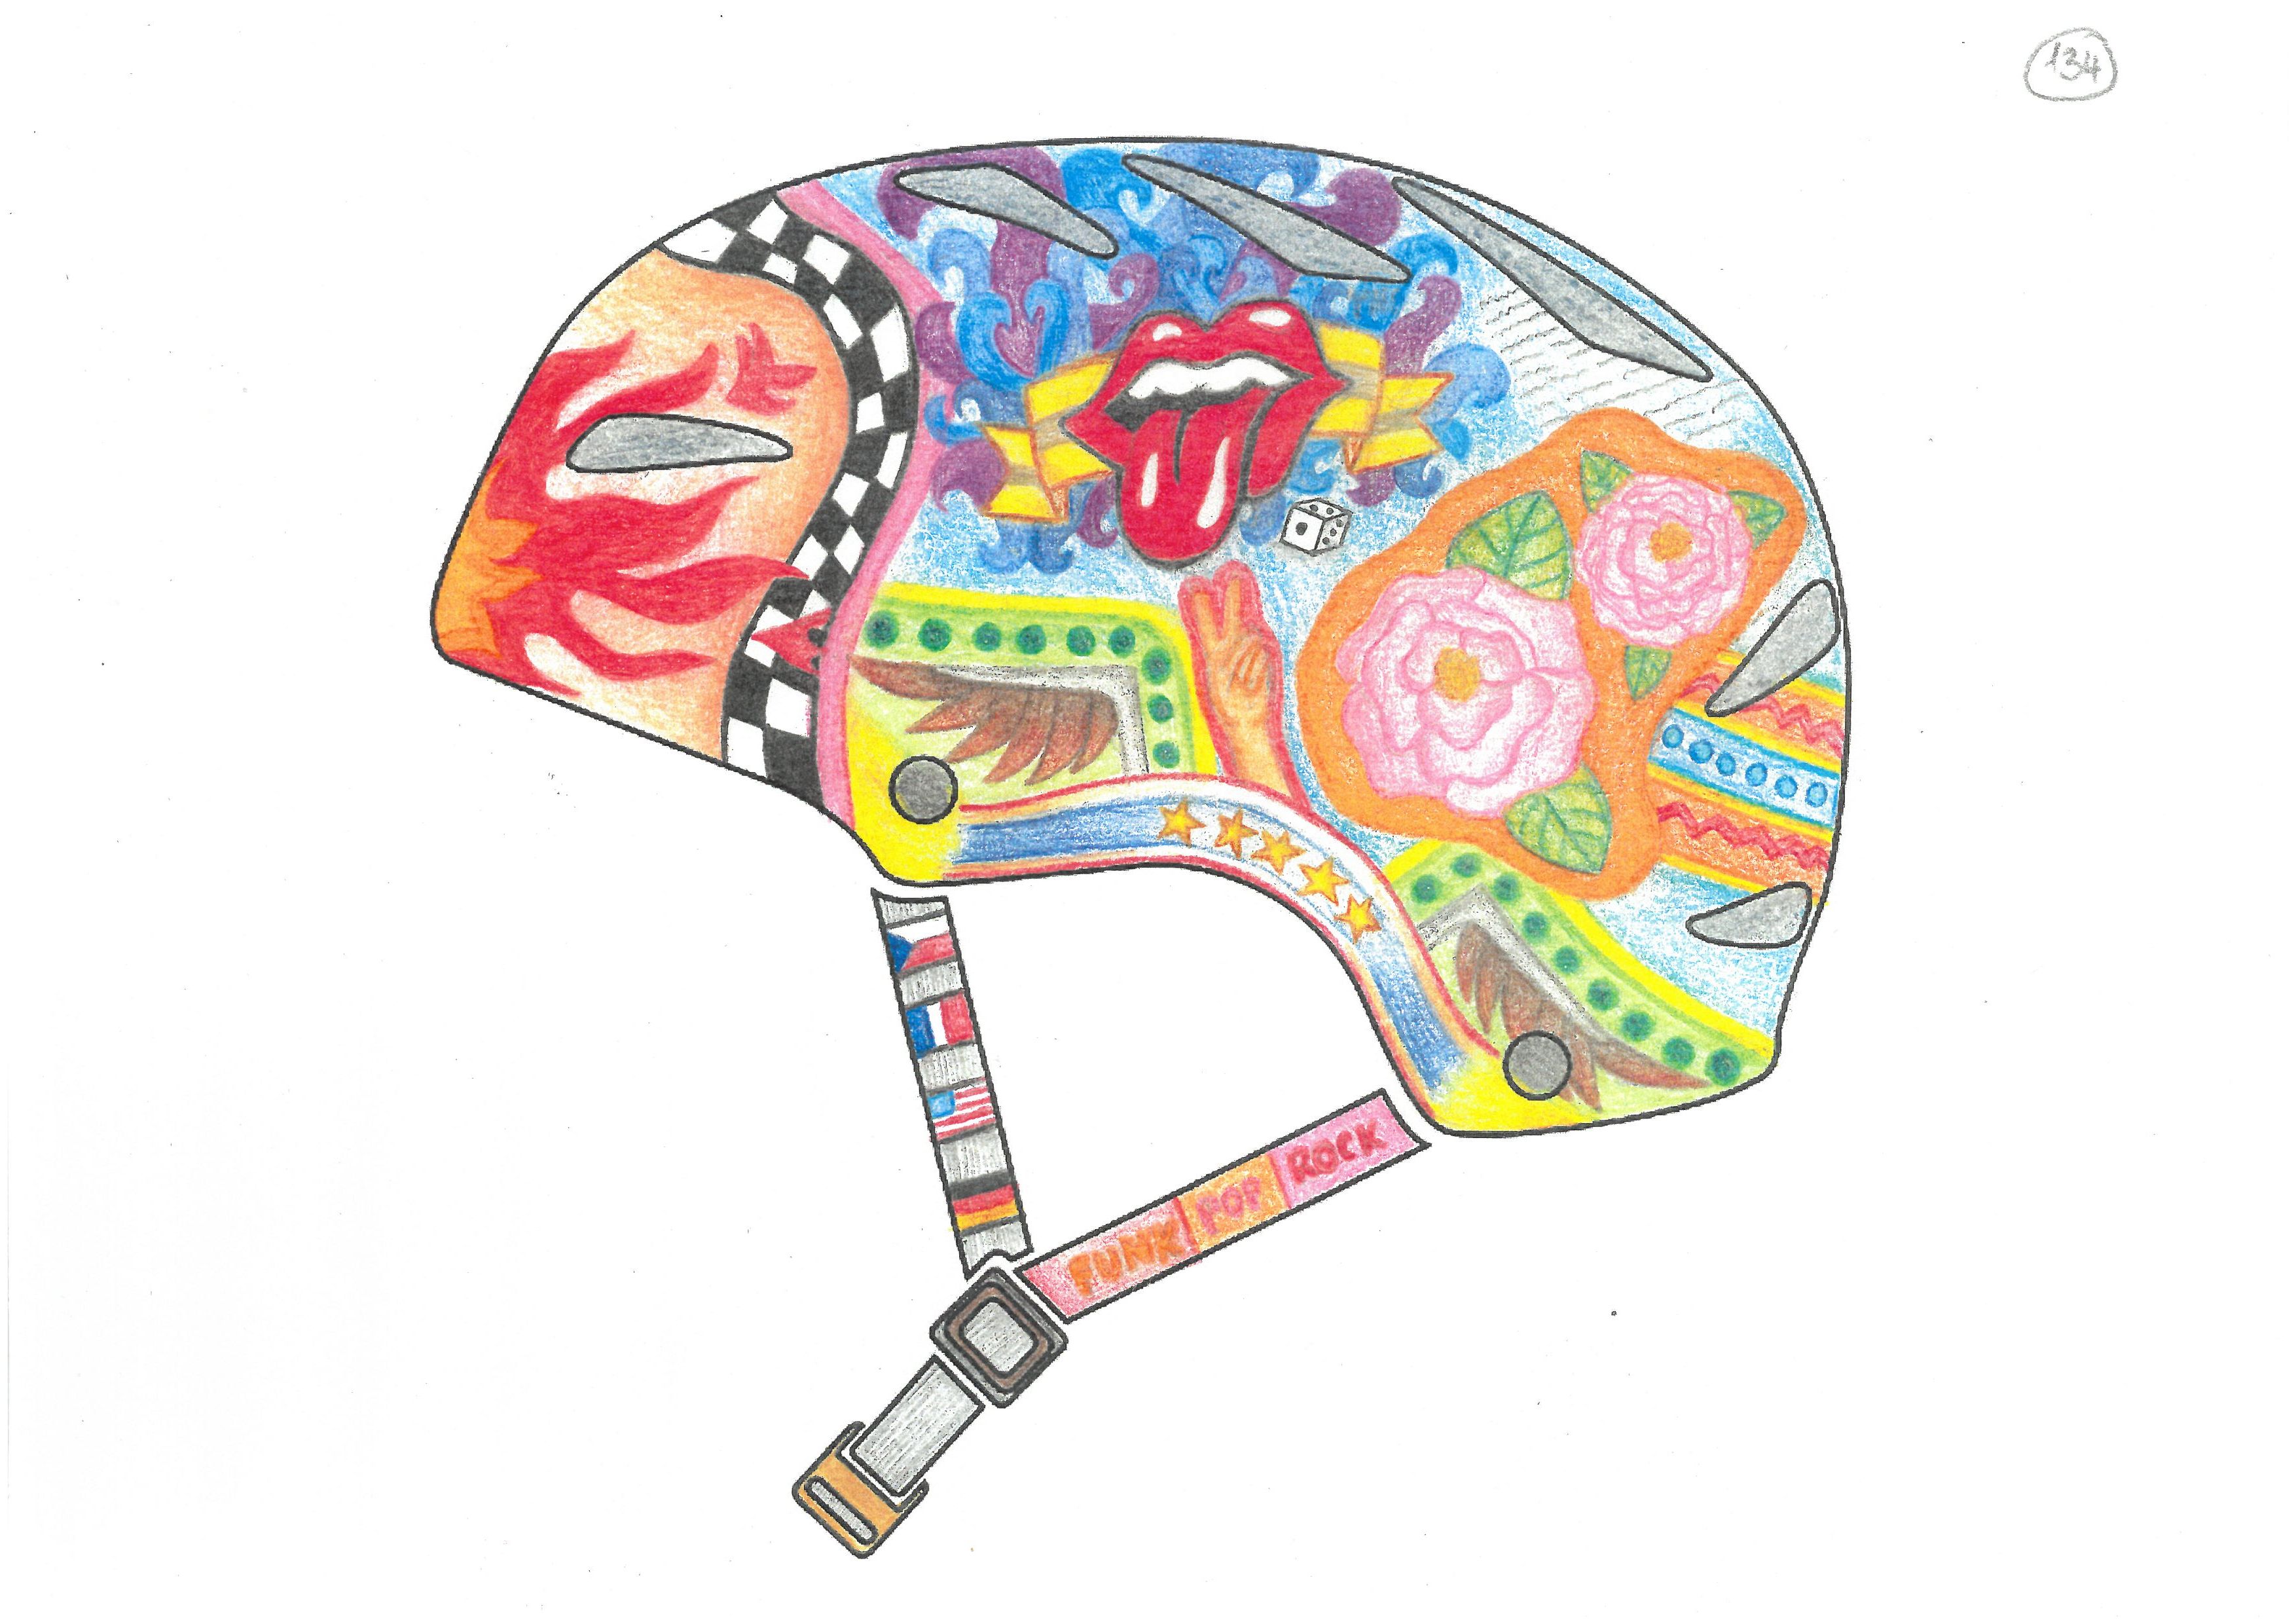 Vítězný návrh designu cyklistické helmy autorky Zuzany Haukové.